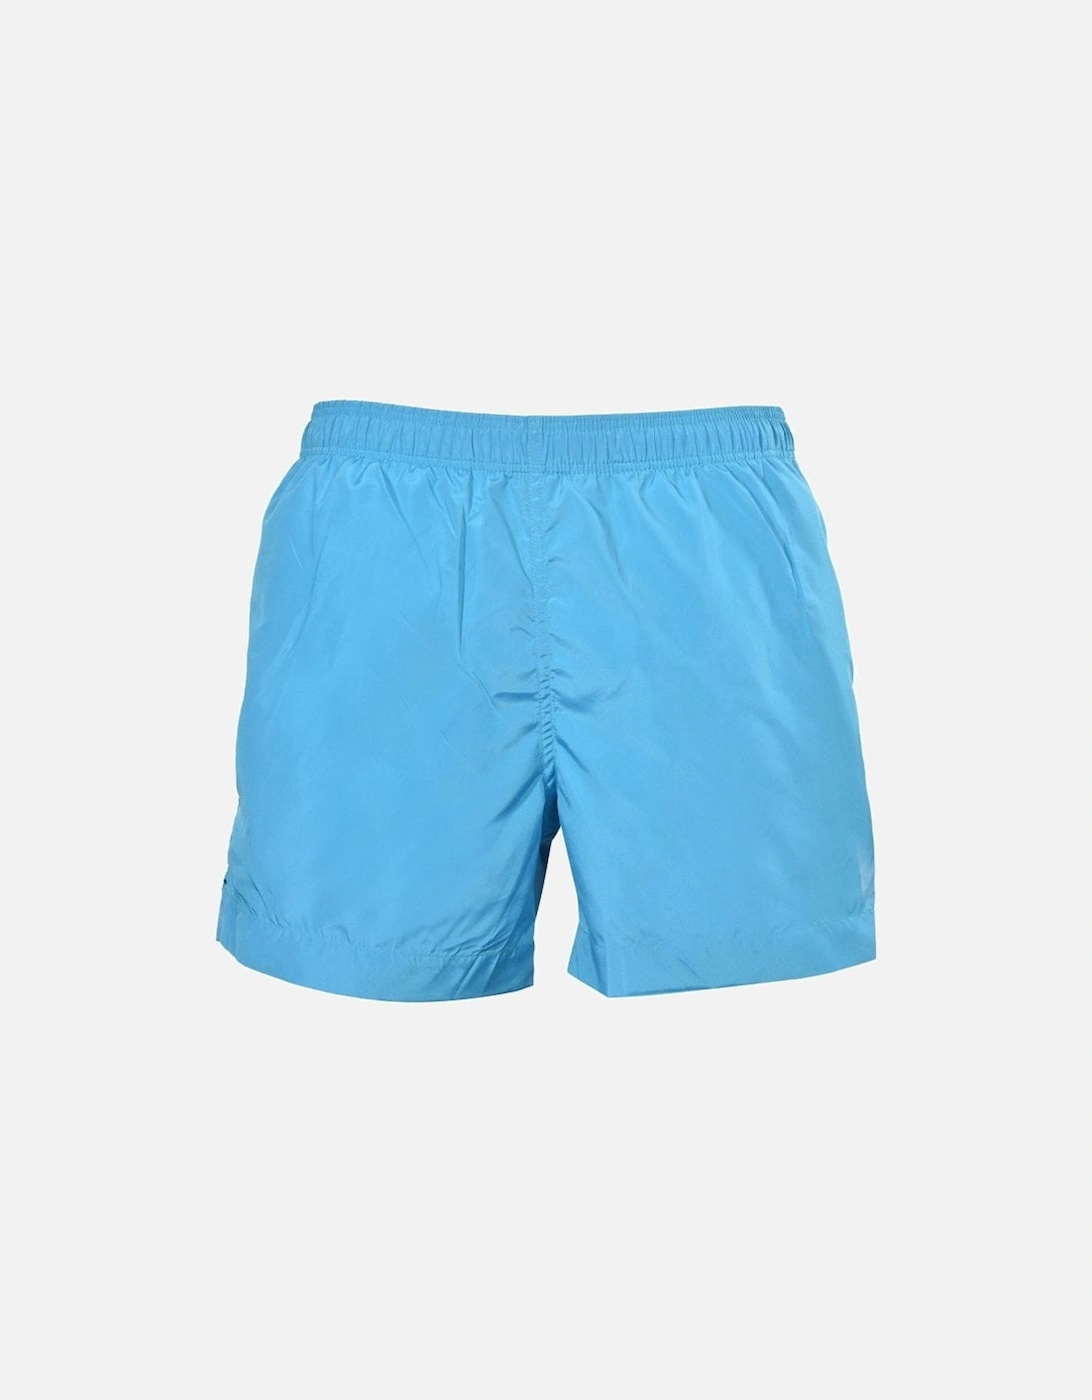 Classic Beach Swim Shorts, Scuba Blue, 5 of 4